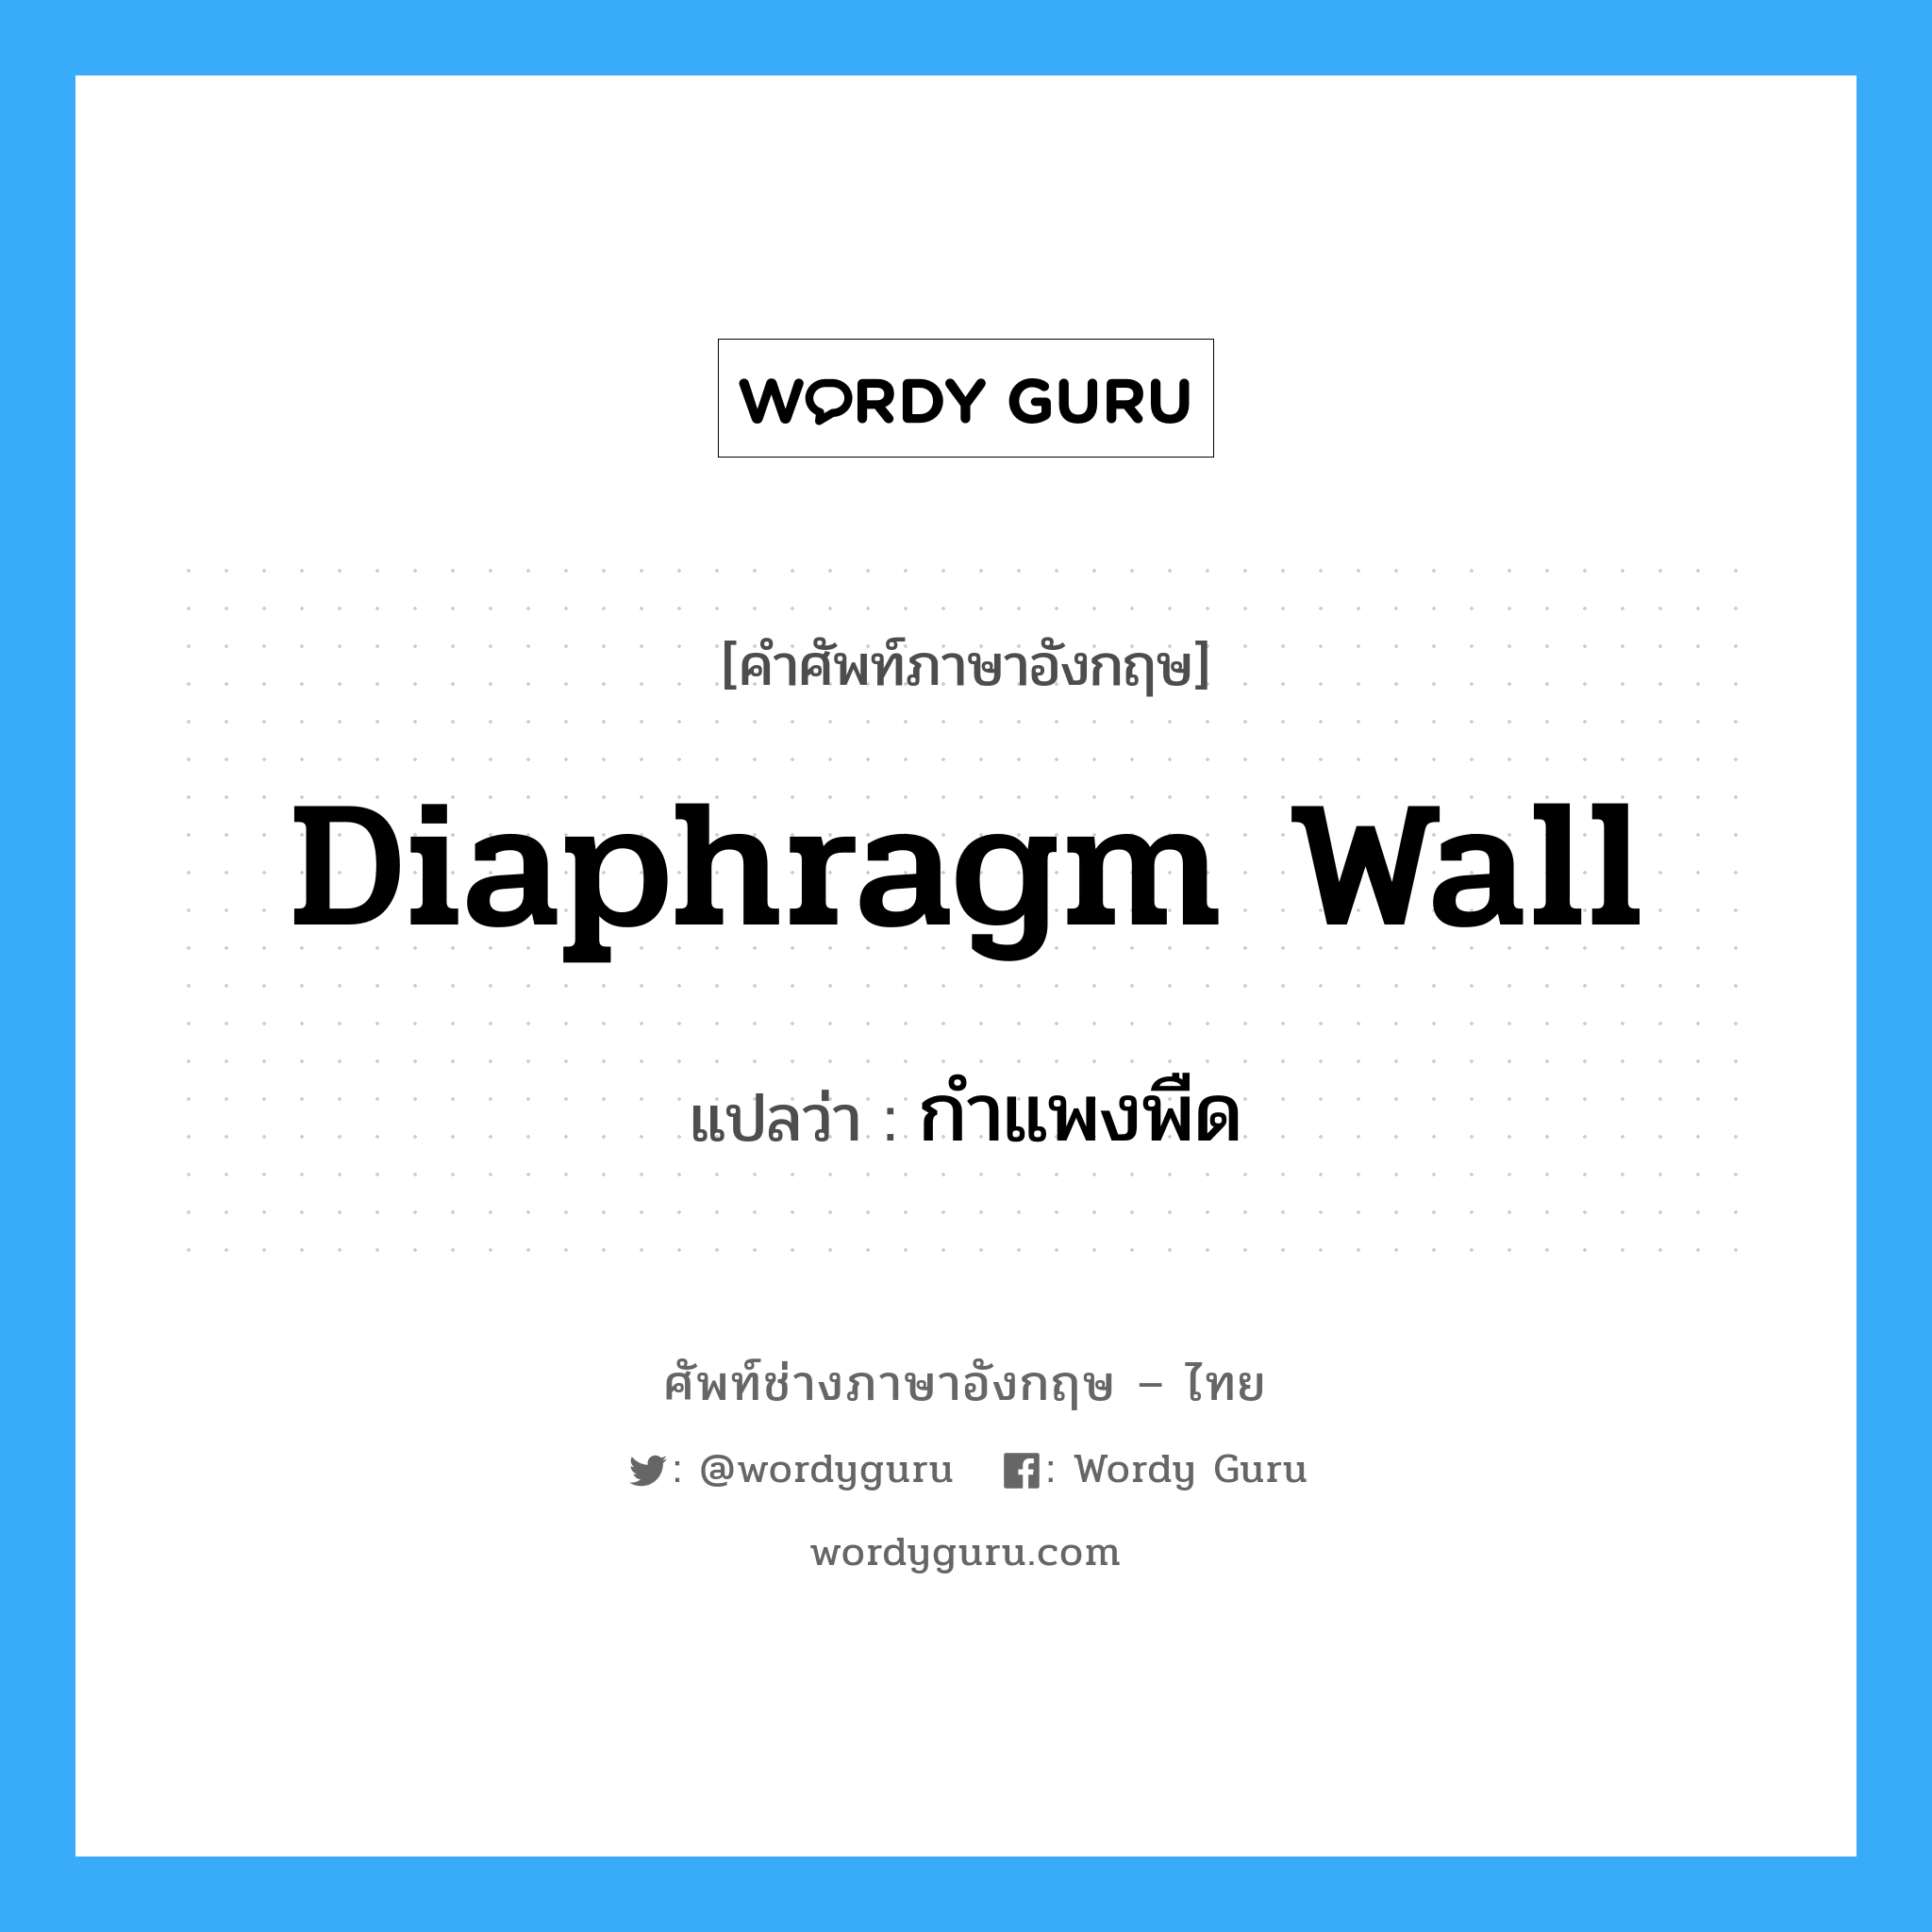 กำแพงพืด ภาษาอังกฤษ?, คำศัพท์ช่างภาษาอังกฤษ - ไทย กำแพงพืด คำศัพท์ภาษาอังกฤษ กำแพงพืด แปลว่า diaphragm wall